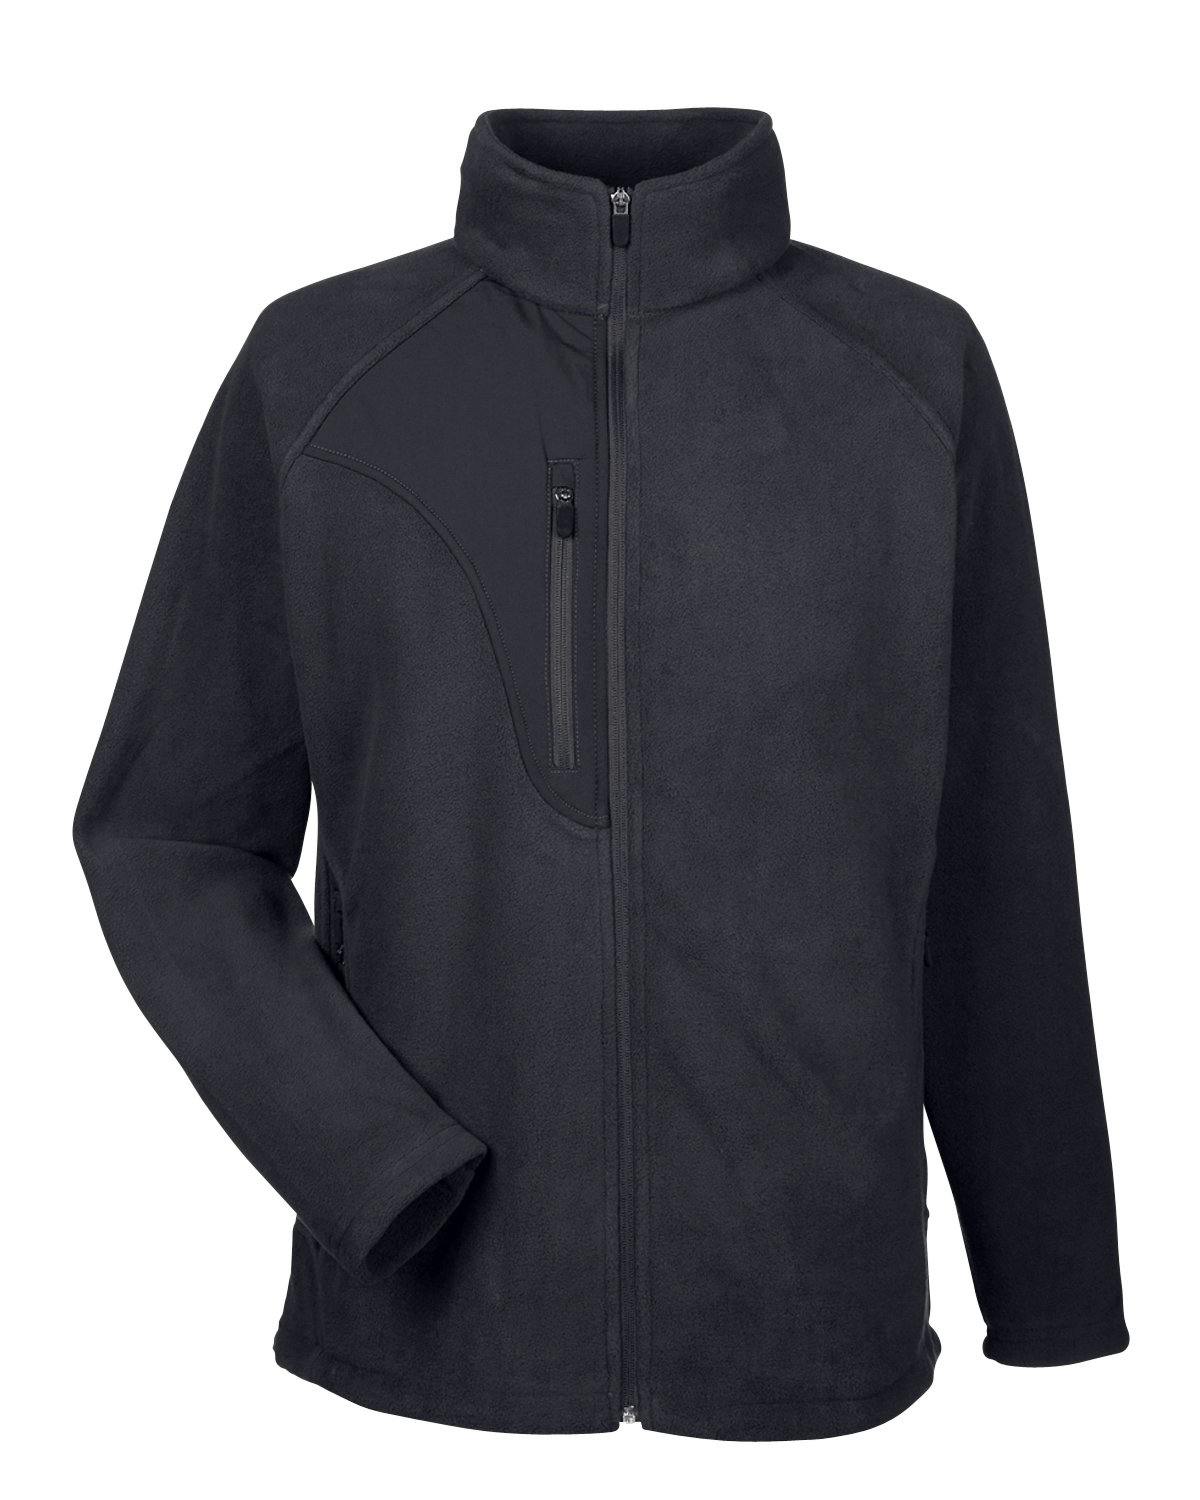 Image for Men's Microfleece Full-Zip Jacket